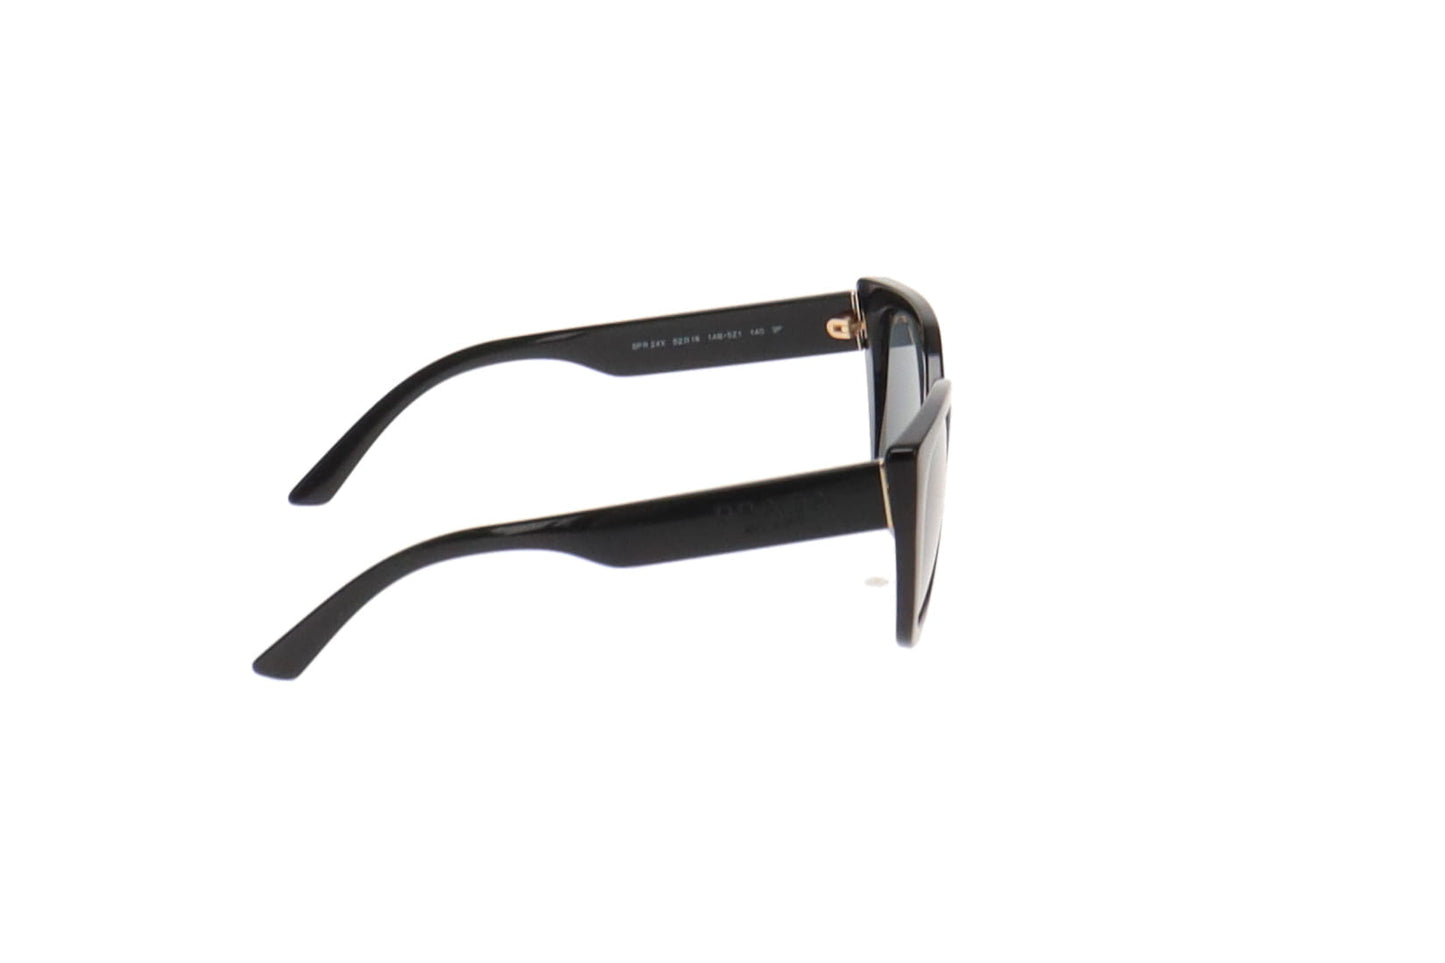 Prada Black Frame SPR24X Sunglasses